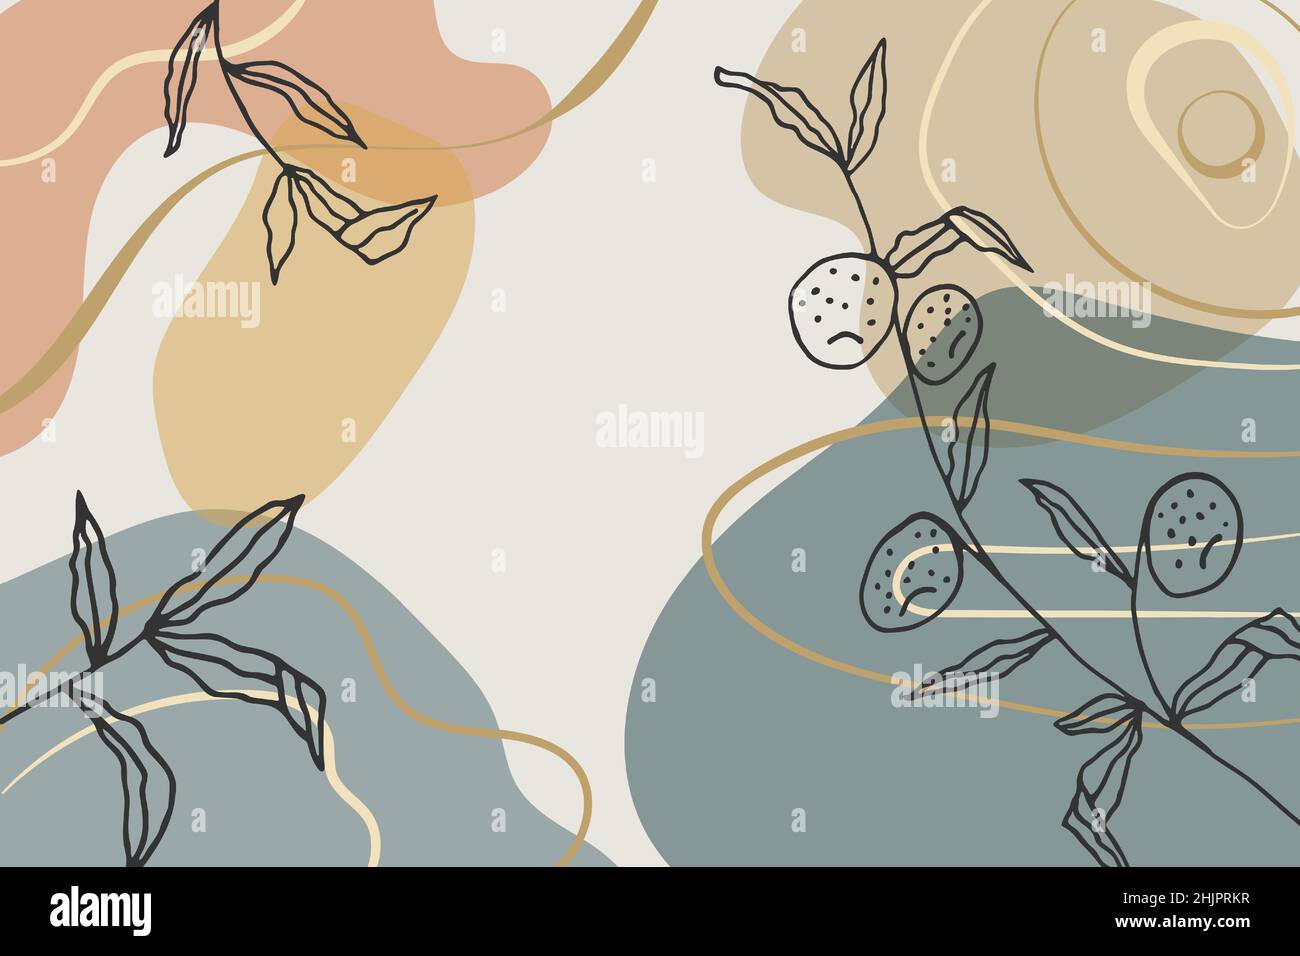 Zeitgenössische Wandkunst mit abstrakten Formen und handgezeichneten Pflanzenmotiven. Minimalistische Bohemian-Illustration für Wandgestaltung, Cover oder Karte. Erdige Töne Stock Vektor